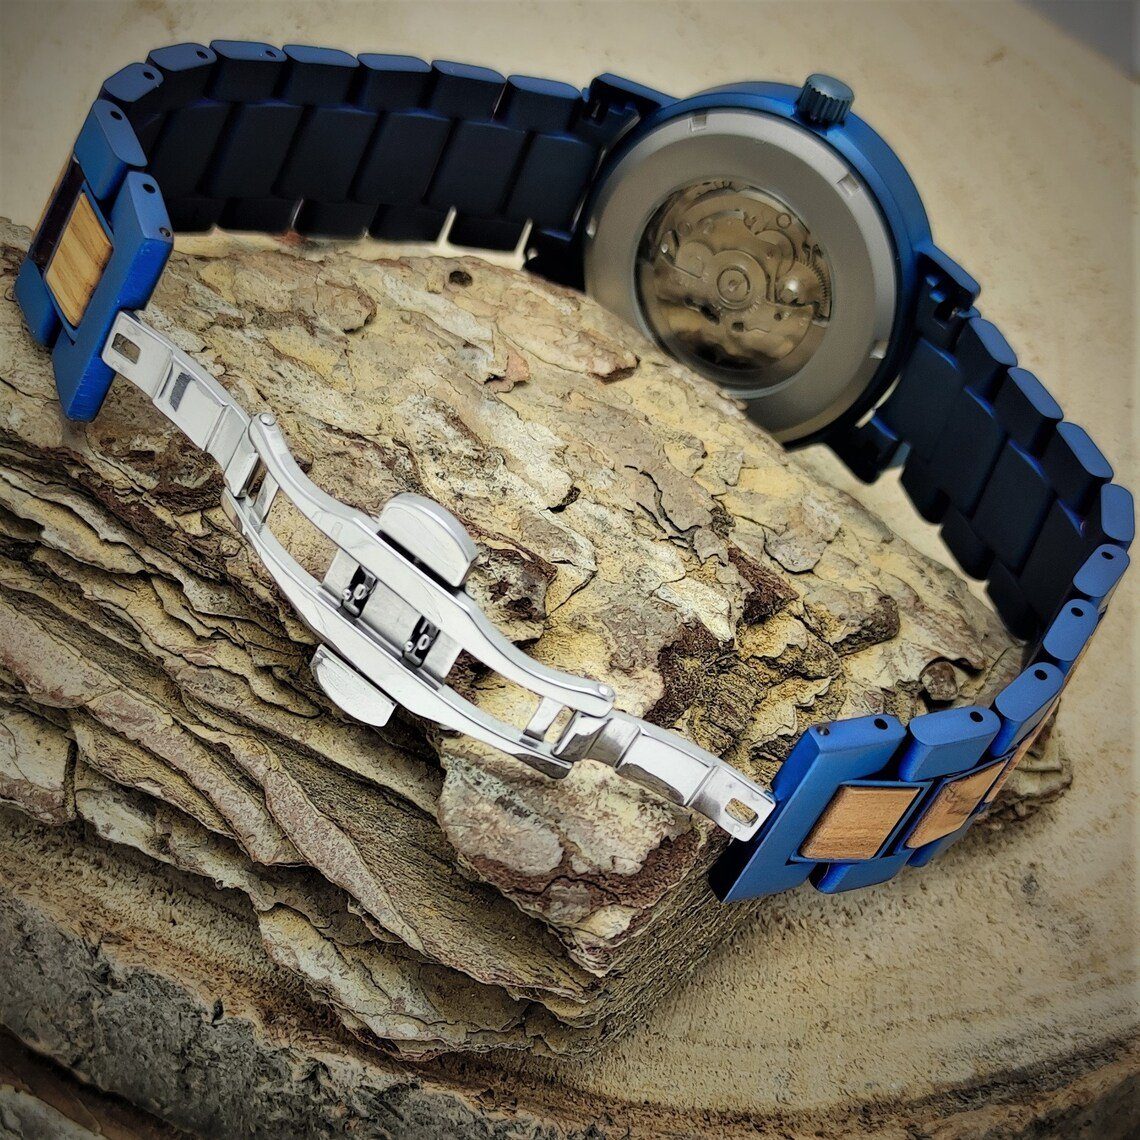 & blau, beige Uhr, Herren Holz Automatikuhr Armband COBURG schwarz, Edelstahl Holzwerk